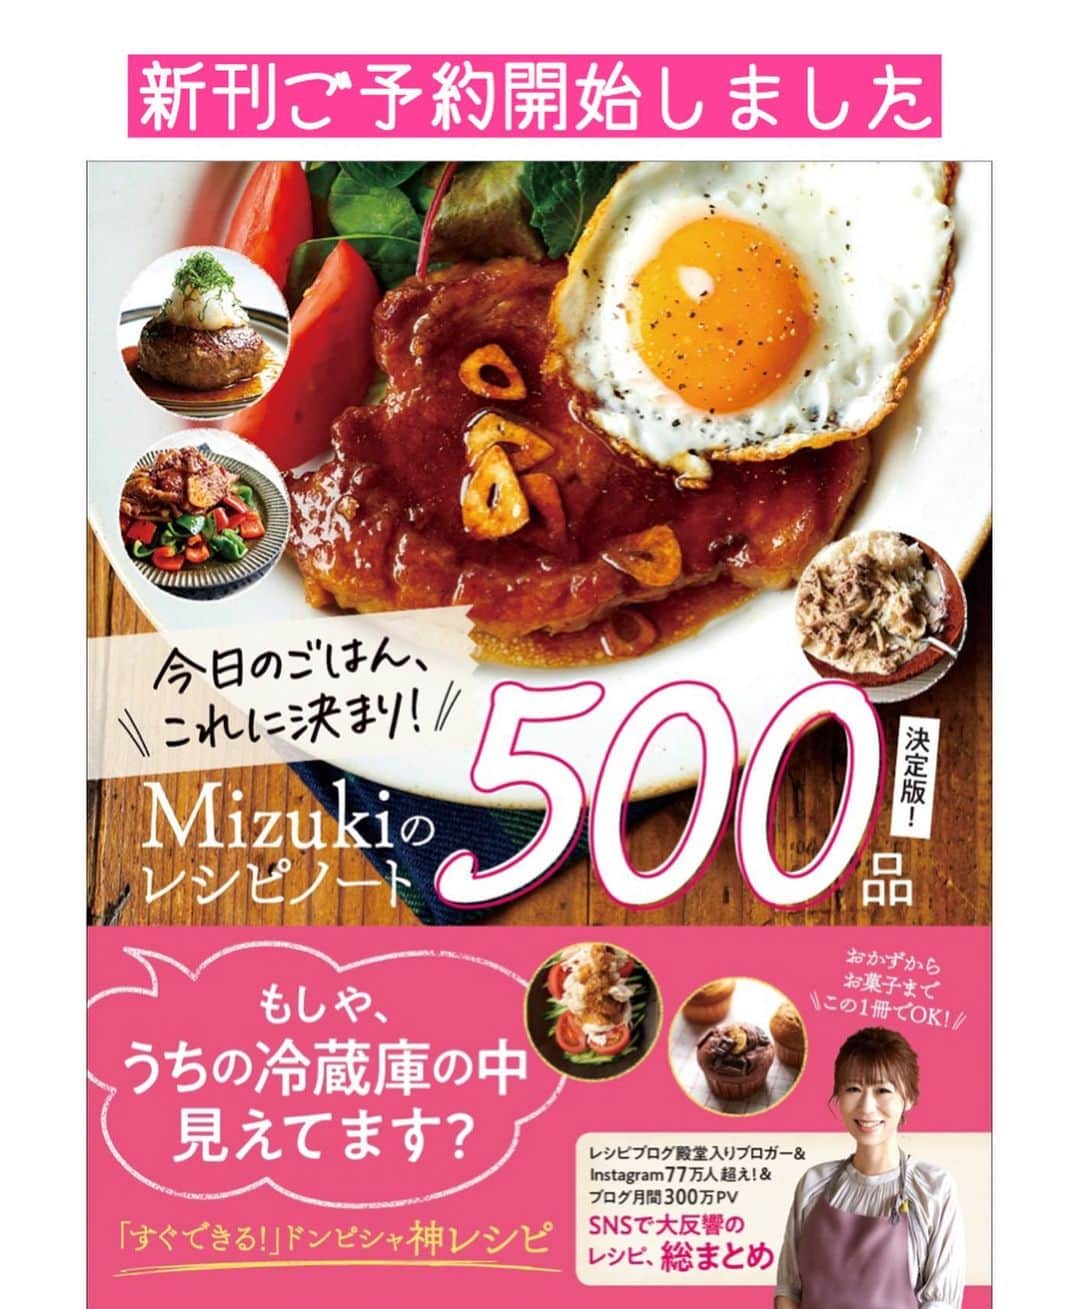 Mizuki【料理ブロガー・簡単レシピ】さんのインスタグラム写真 - (Mizuki【料理ブロガー・簡単レシピ】Instagram)「・ 【#レシピ 】ーーーーーー 超簡単！チーズプルコギ ーーーーーーーーーーーー ⁡ 　 ⁡ おはようございます(*^^*) ⁡ 今日ご紹介させていただくのは とろ〜りチーズをからめて食べる \ チーズプルコギ / ⁡ 味付けは下味のみで漬け込みなし！ 全部揉んで炒めるだけ！の 超〜簡単レシピです(*´艸`) ⁡ これひとつで お肉も野菜も食べられて 満足感がありますよ〜♡ フライパンひとつでできるので よかったらお試し下さいね♩ ⁡ 《追記》 インスタ不具合でしょうか？？ コメントが見られなくなっています😢 ⁡ ⁡  ＿＿＿＿＿＿＿＿＿＿＿＿＿＿＿＿＿＿＿＿＿ 【2人分】 牛(又は豚)こま切れ肉...200g 玉ねぎ...1/2個 ピーマン...2個 赤パプリカ...1/2個 ●砂糖・醤油・酒・ごま油...各大1 ●オイスターソース...小2 ●(好みで)豆板醤...小1/2 ●にんにくチューブ...3cm ピザ用チーズ...80g〜 ⁡ 1.玉ねぎは薄切りにする。ピーマンとパプリカは細切りにする。ポリ袋に牛肉(又は豚肉)、玉ねぎ、ピーマン、パプリカ、●を入れて揉み込む。 2.フライパンを中火で熱して1を炒めて火を通す。 3.中央を空け、チーズを入れて蓋をのせ、チーズがとろけるまで加熱する。 ￣￣￣￣￣￣￣￣￣￣￣￣￣￣￣￣￣￣￣￣￣ ⁡ ⁡ ⁡ 《ポイント》 ♦︎豚肉で作っても美味しいです♩ ♦︎チーズの量はお好みで加減して下さい♩ ♦︎チーズがかたまらないうちに、出来たてをお召し上がり下さいね♩ ⁡ ⁡ ⁡ ⁡ ⁡ ⁡ ⁡ ⁡ \ 新刊予約開始しました /(9月24日発売) ⁡ 🔹🔹🔹🔹🔹🔹🔹🔹🔹🔹🔹🔹 今日のごはんこれに決まり！ #Mizukiのレシピノート 決定版 500品 🔹🔹🔹🔹🔹🔹🔹🔹🔹🔹🔹🔹 ⁡ 総レシピ6000点の中からレシピを厳選！ まさかの【500レシピ掲載】しました⭐️ (もはや辞典...) ⁡ 肉や魚のメインおかずはもちろん 副菜、丼、麺、スープ、お菓子 ハレの日のレシピ、鍋のレシピまで 全てこの一冊で完結！！ ⁡ ⁡ 🎁新刊予約でエプロンが当たる🎁 プレゼントキャンペーン実施中 ￣￣￣￣￣￣￣￣￣￣￣￣￣￣￣￣￣￣￣￣￣ 【応募方法】 ❶1枚目に表紙画像 2枚目にAmazonで予約したことがわかる画像 (どちらもスクショでOK)を貼りつける。 ❷ハッシュタグ【#Mizukiのレシピノート 】 をつけて投稿！ ￣￣￣￣￣￣￣￣￣￣￣￣￣￣￣￣￣￣￣￣￣￣ ⁡ ⁡ ⁡ ⁡ ⁡ ＿＿＿＿＿＿＿＿＿＿＿＿＿＿＿＿ 🟥YouTube 料理動画配信中🟥 ￣￣￣￣￣￣￣￣￣￣￣￣￣￣￣￣ 料理とお菓子の簡単レシピを ご紹介しています☺️💓 ⁡ 【奇跡のキッチン】で検索🔍 (ハイライトからも飛べます✨) ￣￣￣￣￣￣￣￣￣￣￣￣￣￣￣￣ ⁡ ⁡ ⁡ ＿＿＿＿＿＿＿＿＿＿＿＿＿＿＿＿ 🔶🔶recipe book🔶🔶 ￣￣￣￣￣￣￣￣￣￣￣￣￣￣￣￣ ホケミレシピの決定版♩ \はじめてでも失敗しない/ 📙#ホットケーキミックスのお菓子 ⁡ NHKまる得マガジンテキスト☆ #ホットケーキミックス で ⁡ 📗絶品おやつ&意外なランチ ⁡ しんどくない献立、考えました♩ \𝟣𝟧分でいただきます/ 📕#Mizukiの2品献立 ⁡ 和食をもっとカジュアルに♩ \毎日のごはんがラクになる/ 📘#Mizukiの今どき和食  ＿＿＿＿＿＿＿＿＿＿＿＿＿＿＿＿＿ ⁡ ⁡ ⁡ ⁡ #チーズプルコギm #チーズプルコギ #プルコギ #チーズ #韓国料理 #mizuki #簡単レシピ #時短レシピ #節約レシピ #料理 #料理初心者  #時短ごはん #節約ごはん #フーディーテーブル #おうちごはん #デリスタグラマー #おうちごはんlover #料理好きな人と繋がりたい #写真好きな人と繋がりたい #foodpick#cooking#recipe #foodporn」8月26日 7時13分 - mizuki_31cafe